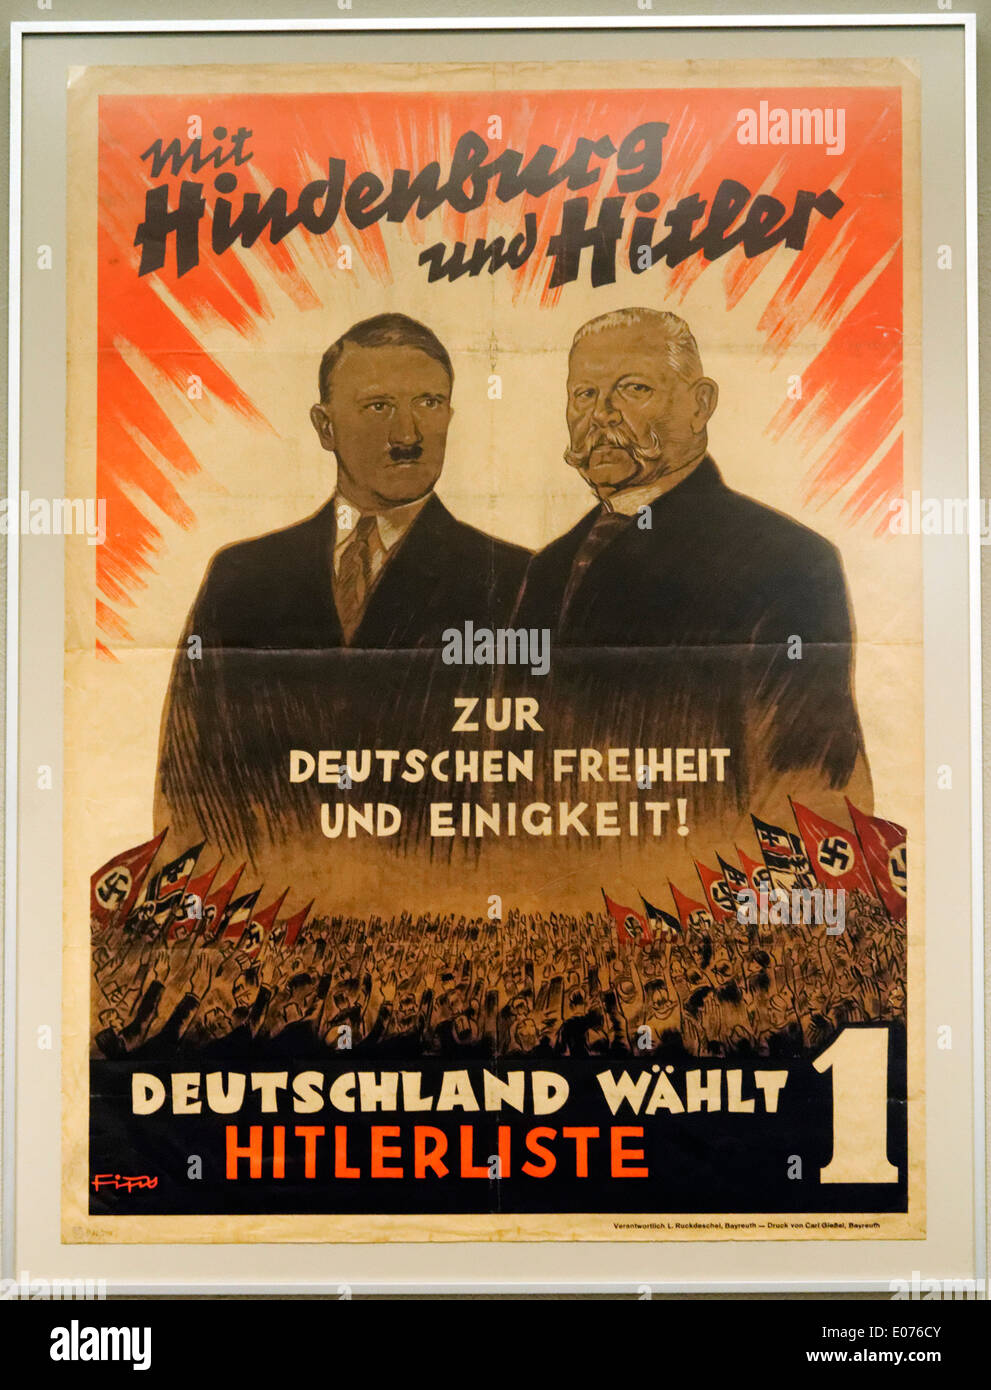 Une affiche électorale nazie de Hitler  + Hindenburg, avec le slogan : "avec Hitler et Hindenburg vers la liberté et l'unité allemande" Banque D'Images